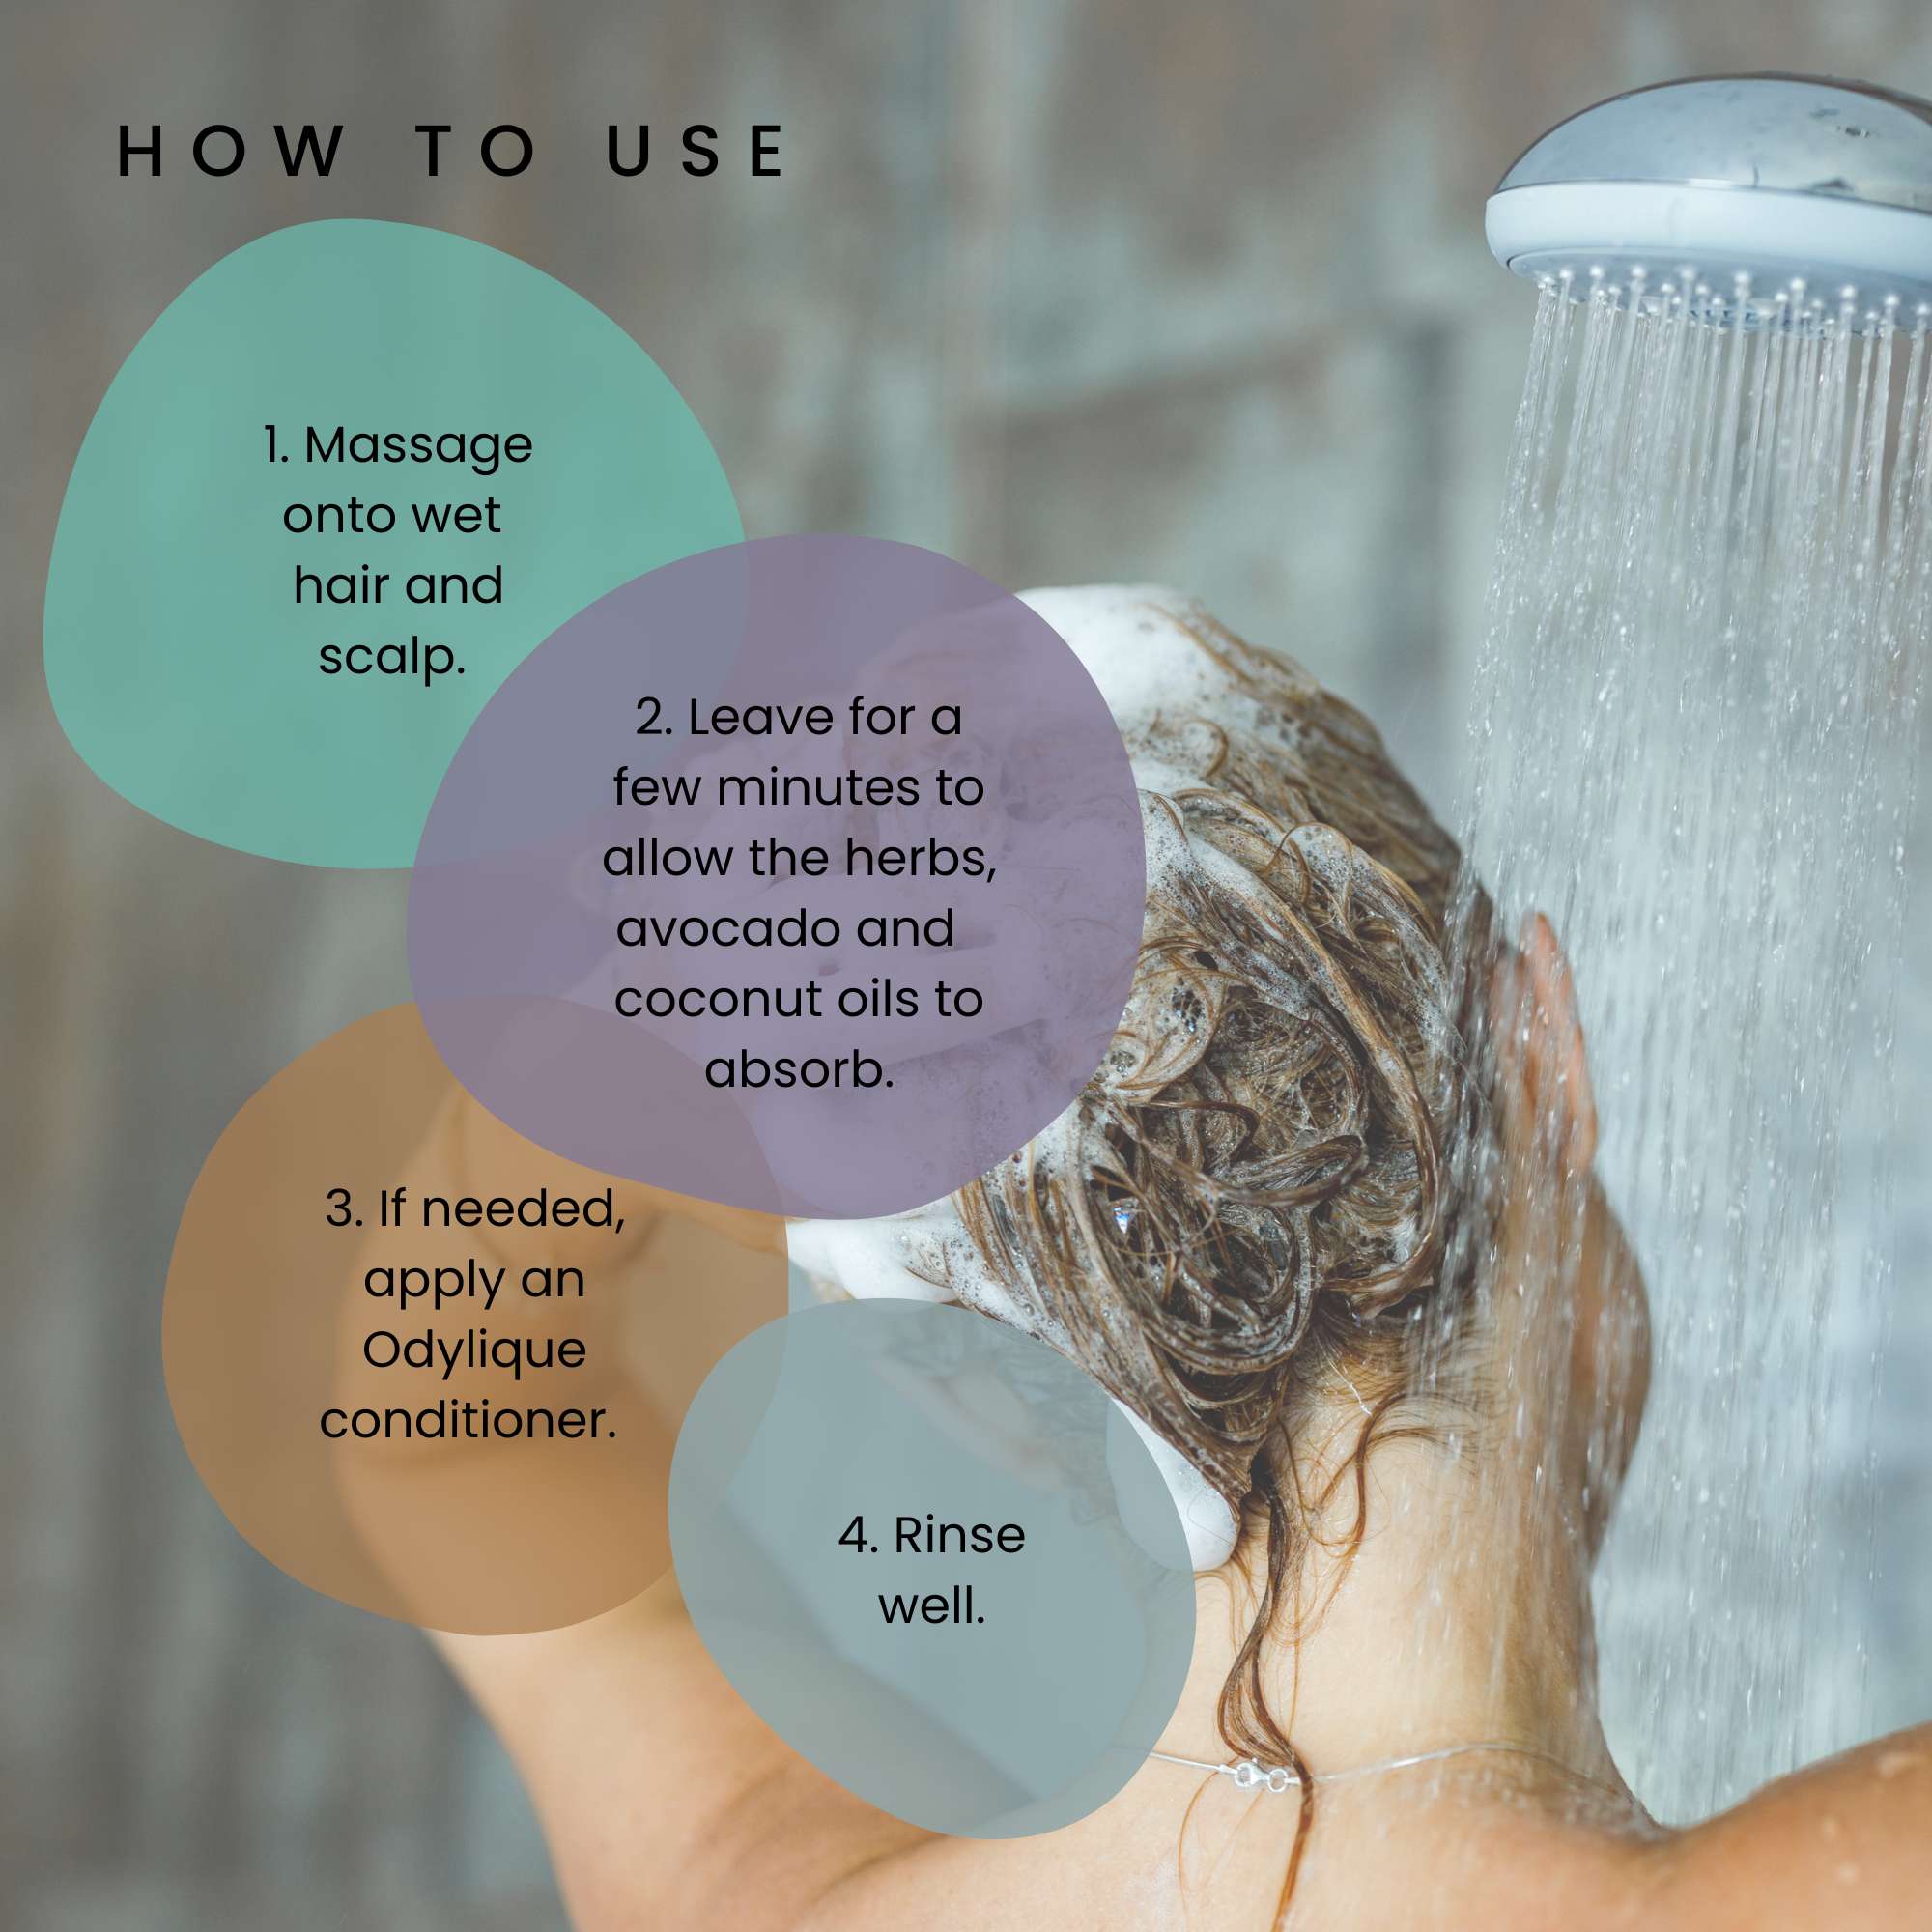 Odylique Lavender Hydrating Shampoo